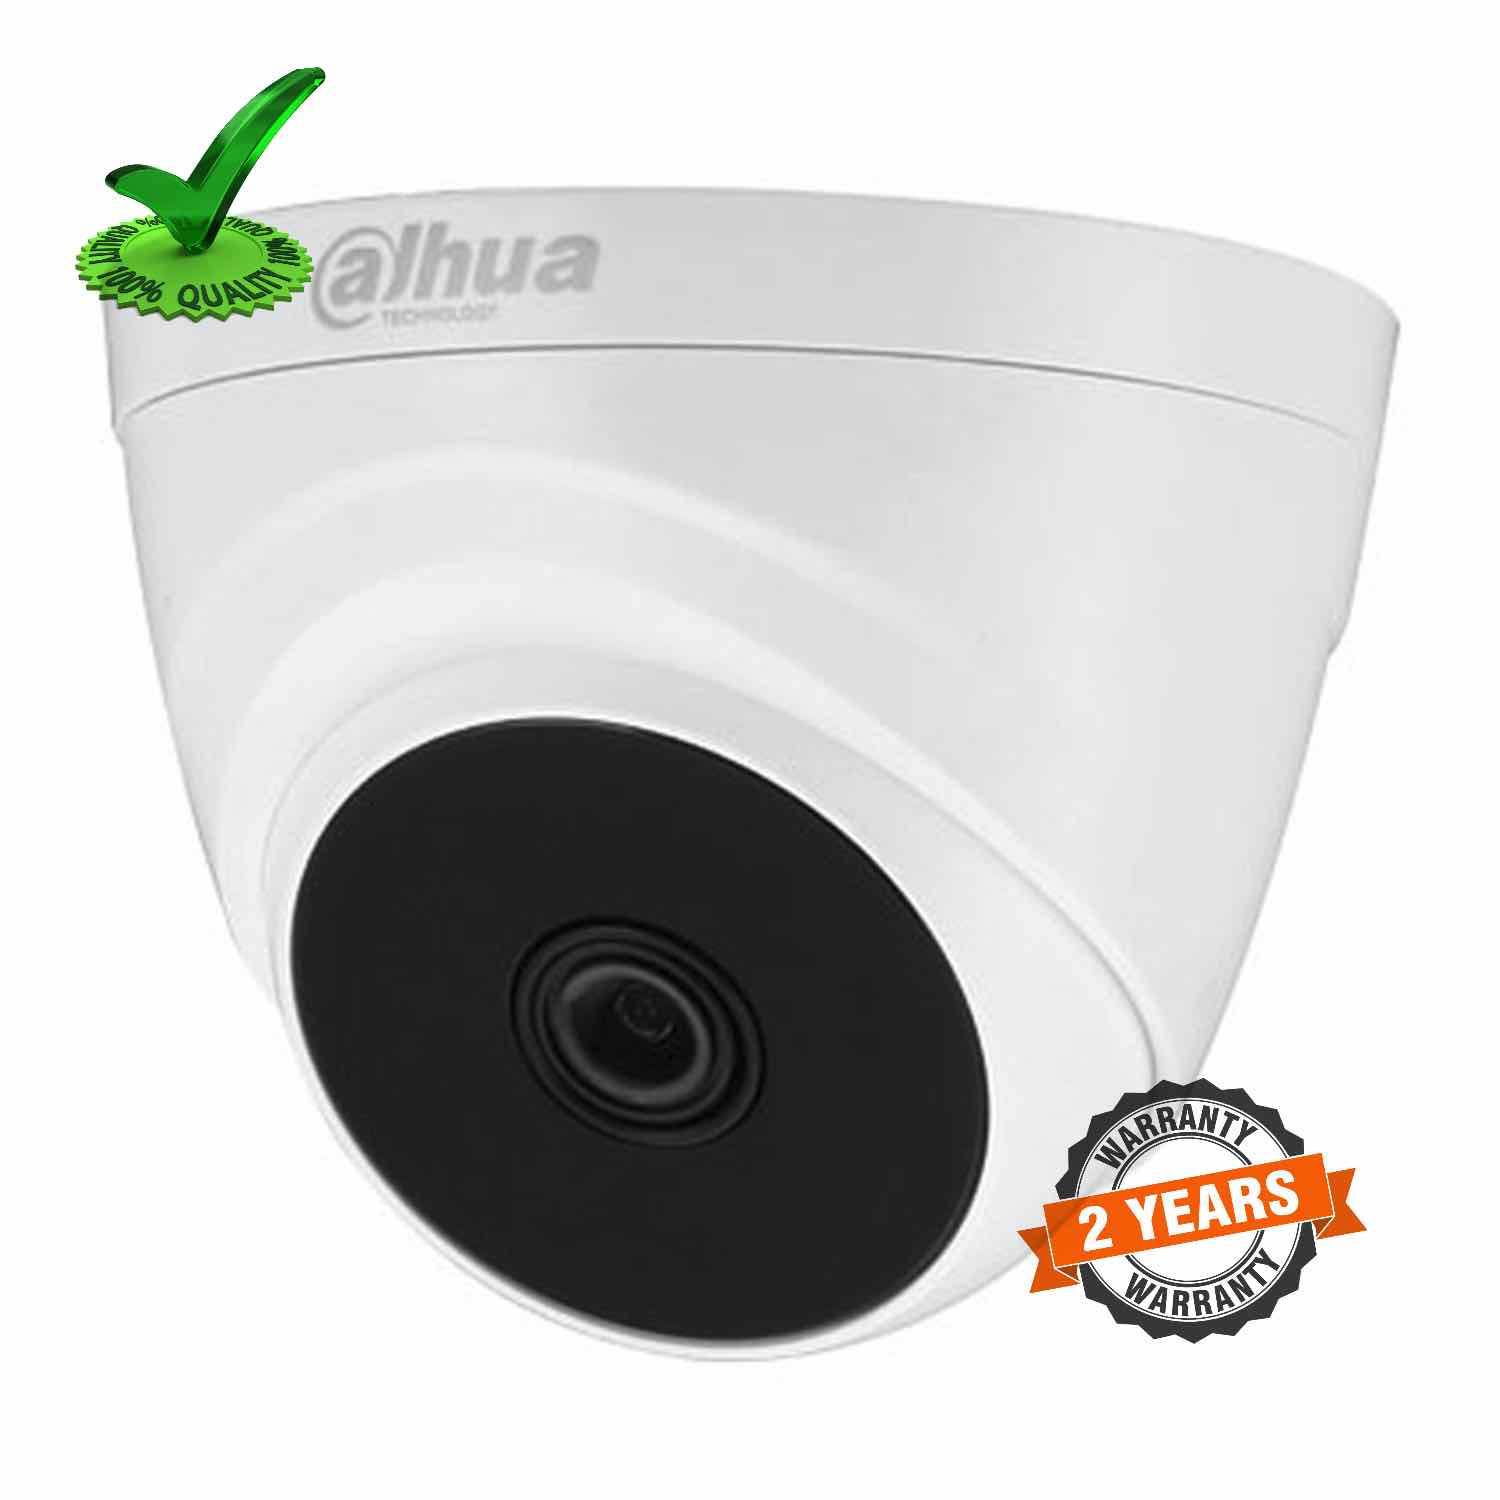 Dahua DH-HAC-T1A21P 2mp Indoor HD Dome Camera